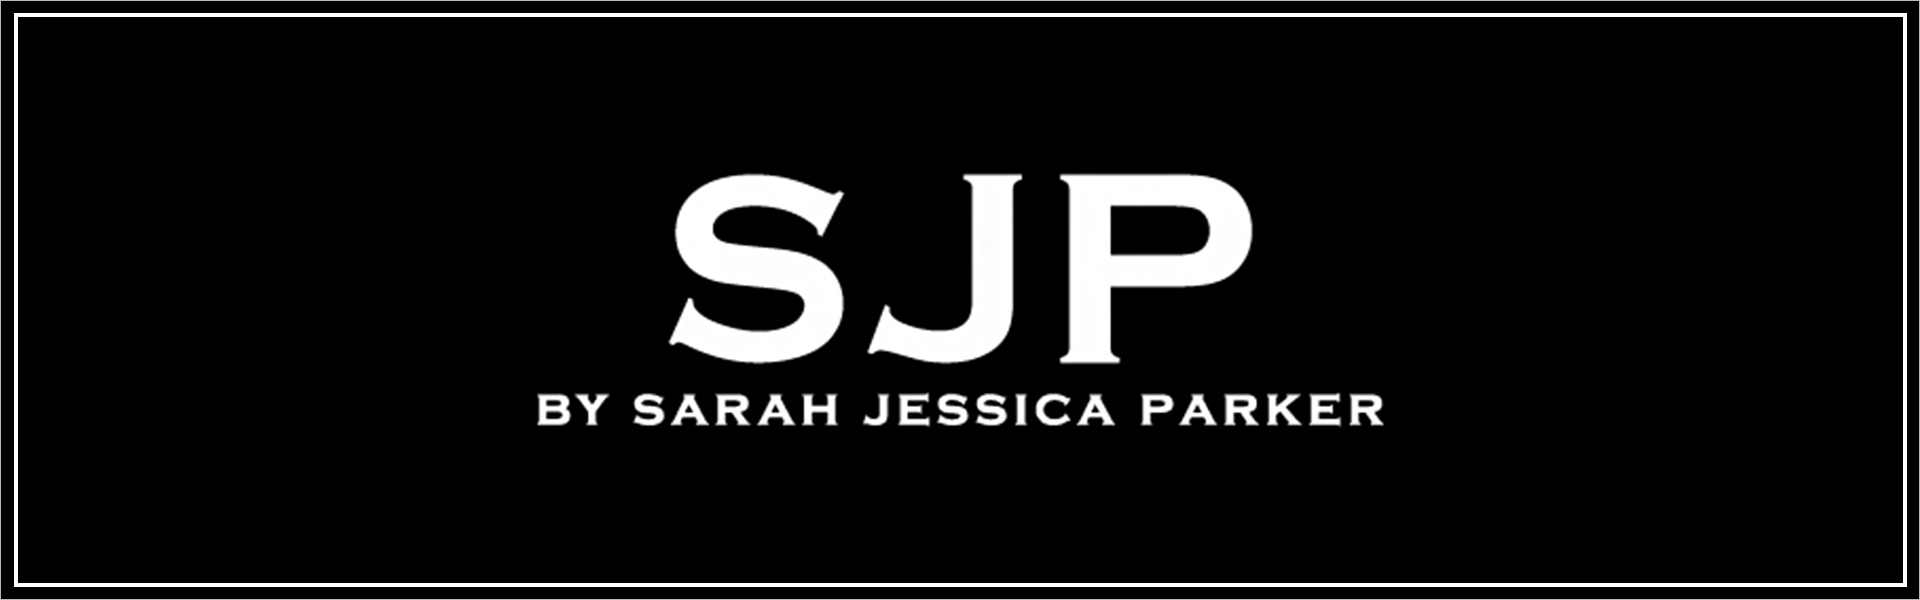 Sarah Jessica Parker Sarah Jessica Parker